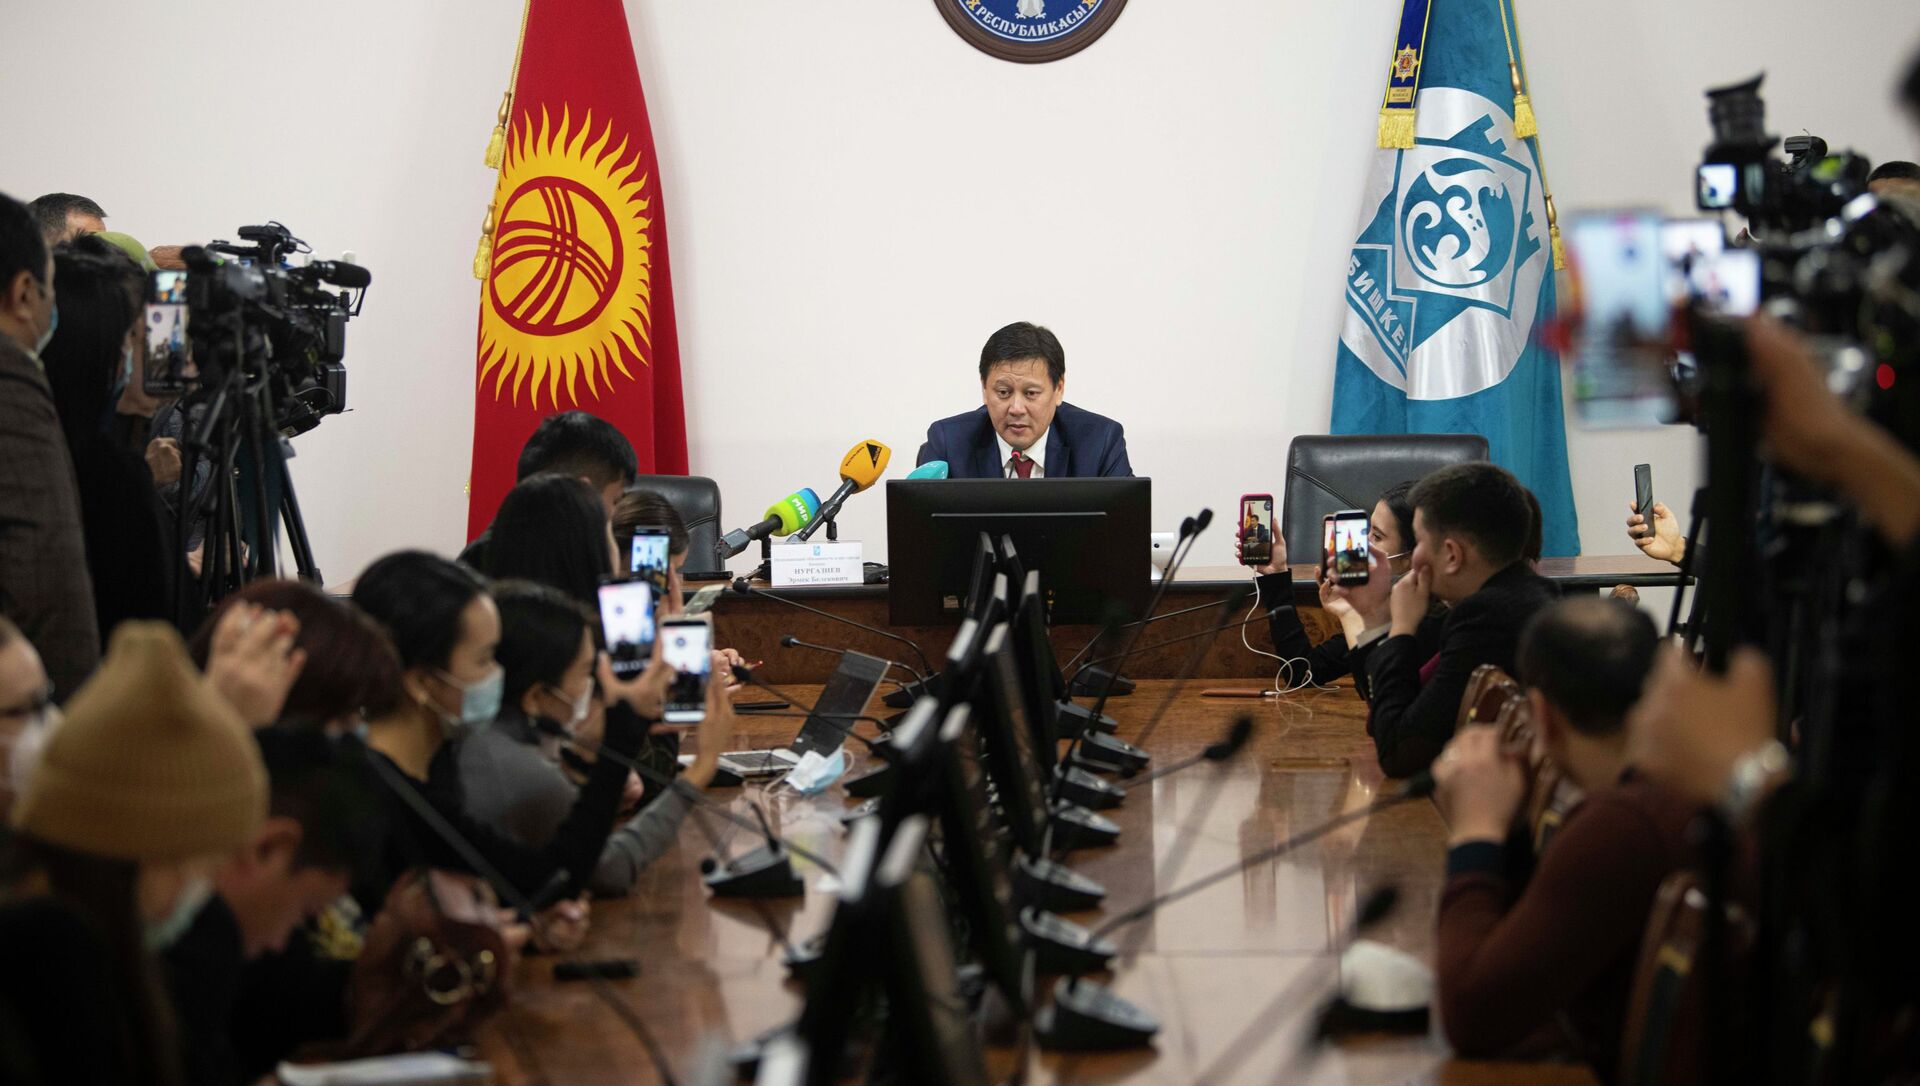 Новый исполняющий обязанности мэра Бишкека Эрмек Нургазиев во время пресс-конференции. 09 февраля 2021 года - Sputnik Кыргызстан, 1920, 09.02.2021